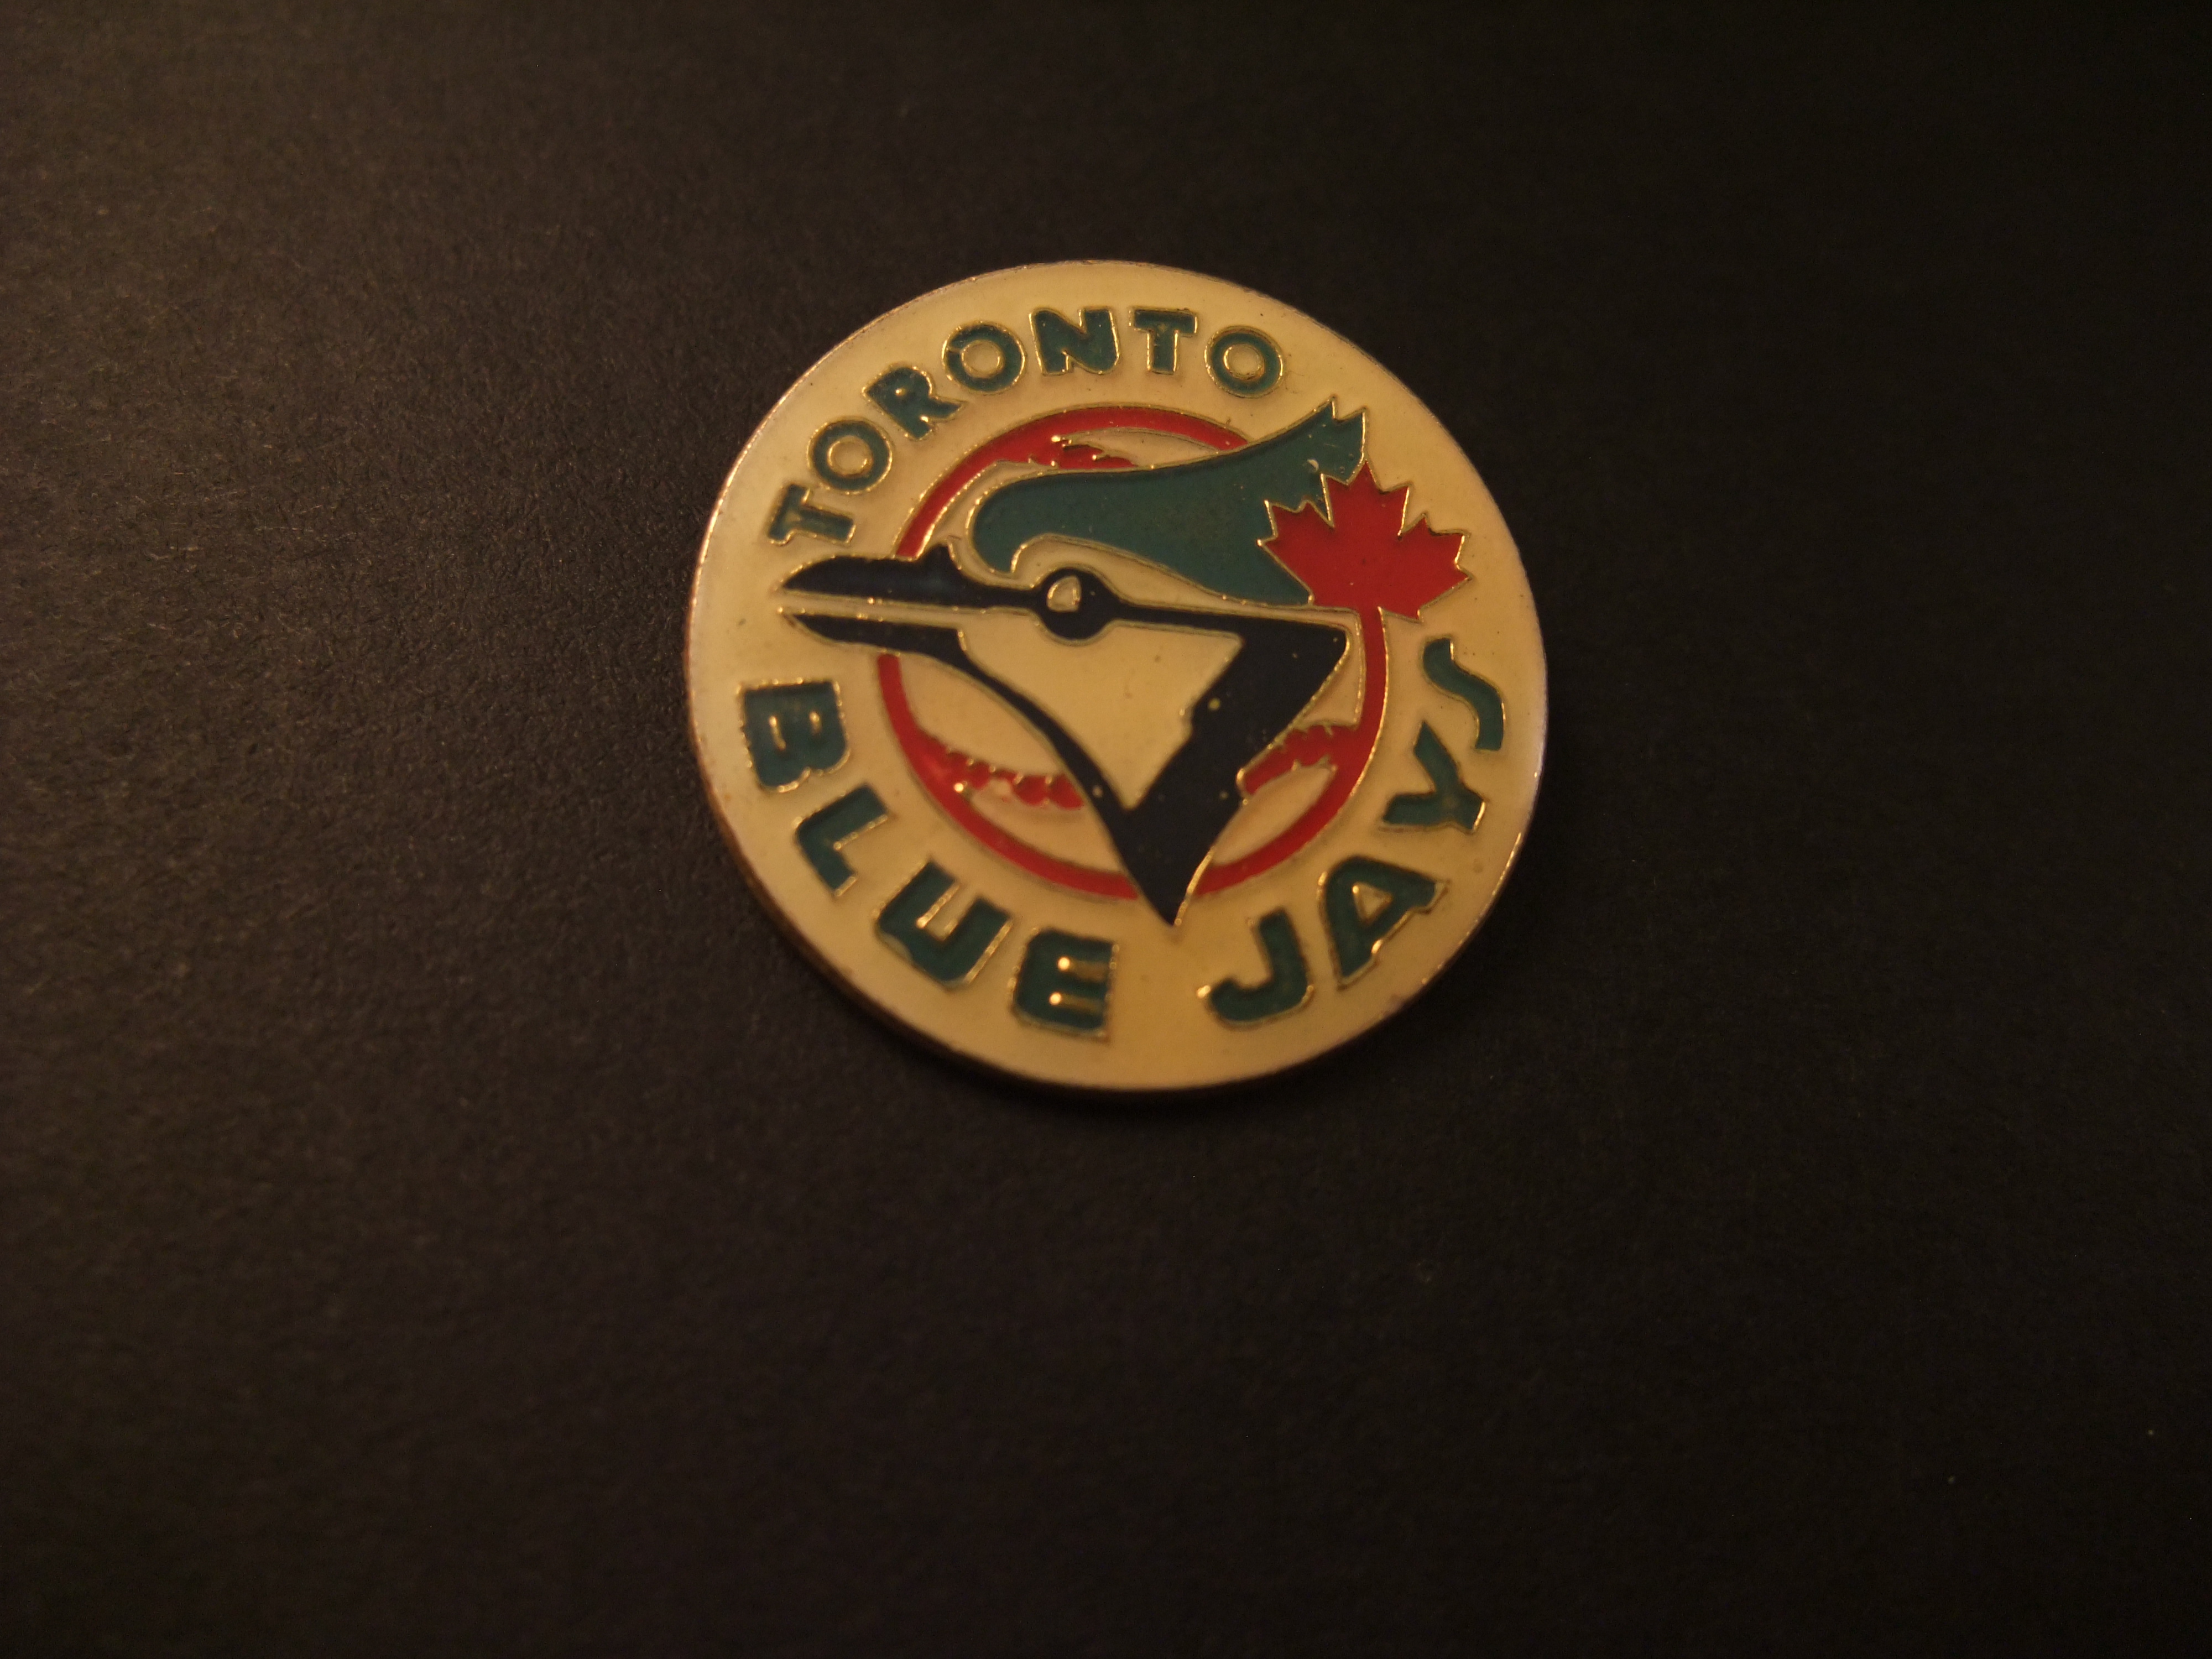 Toronto Blue Jays honkbalclub Canada logo